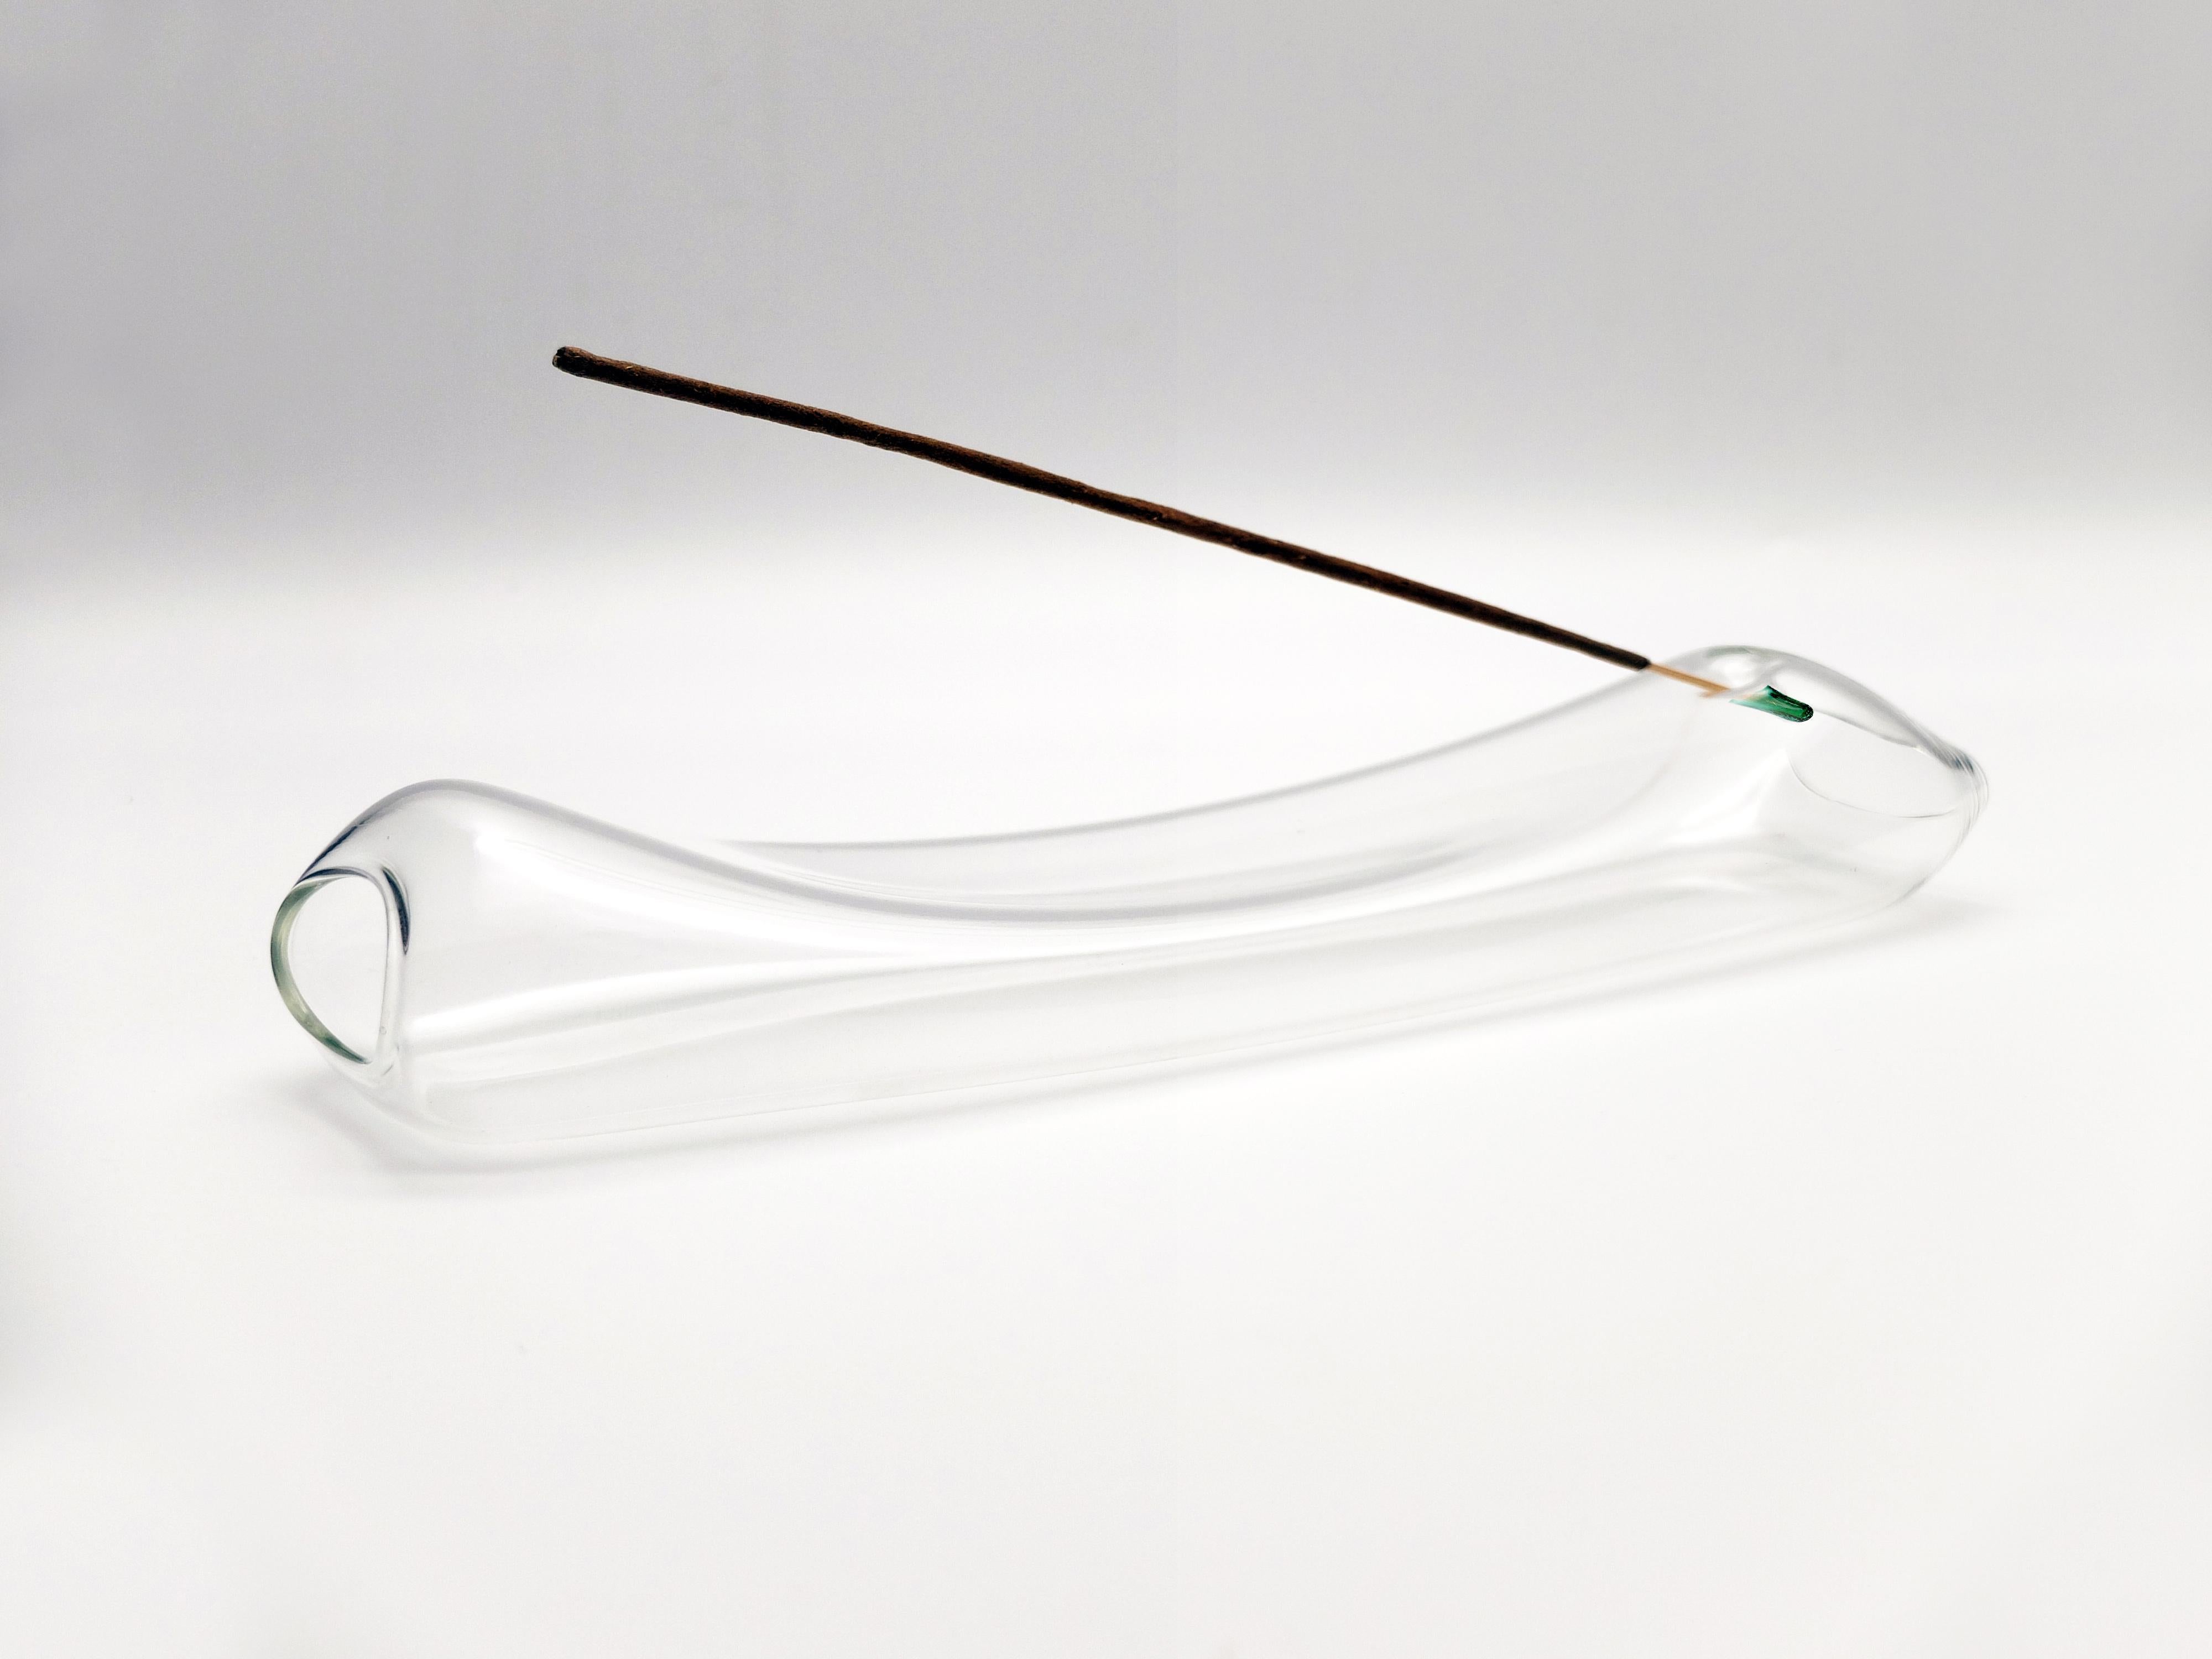 Le porte-encens Smoke est fabriqué en verre borosilicate soufflé. Le design de sa forme, douce et légère, semble être défini par les tourbillons de fumée qui s'élèvent lentement. Le vide interne qui le caractérise a été conçu pour contenir des